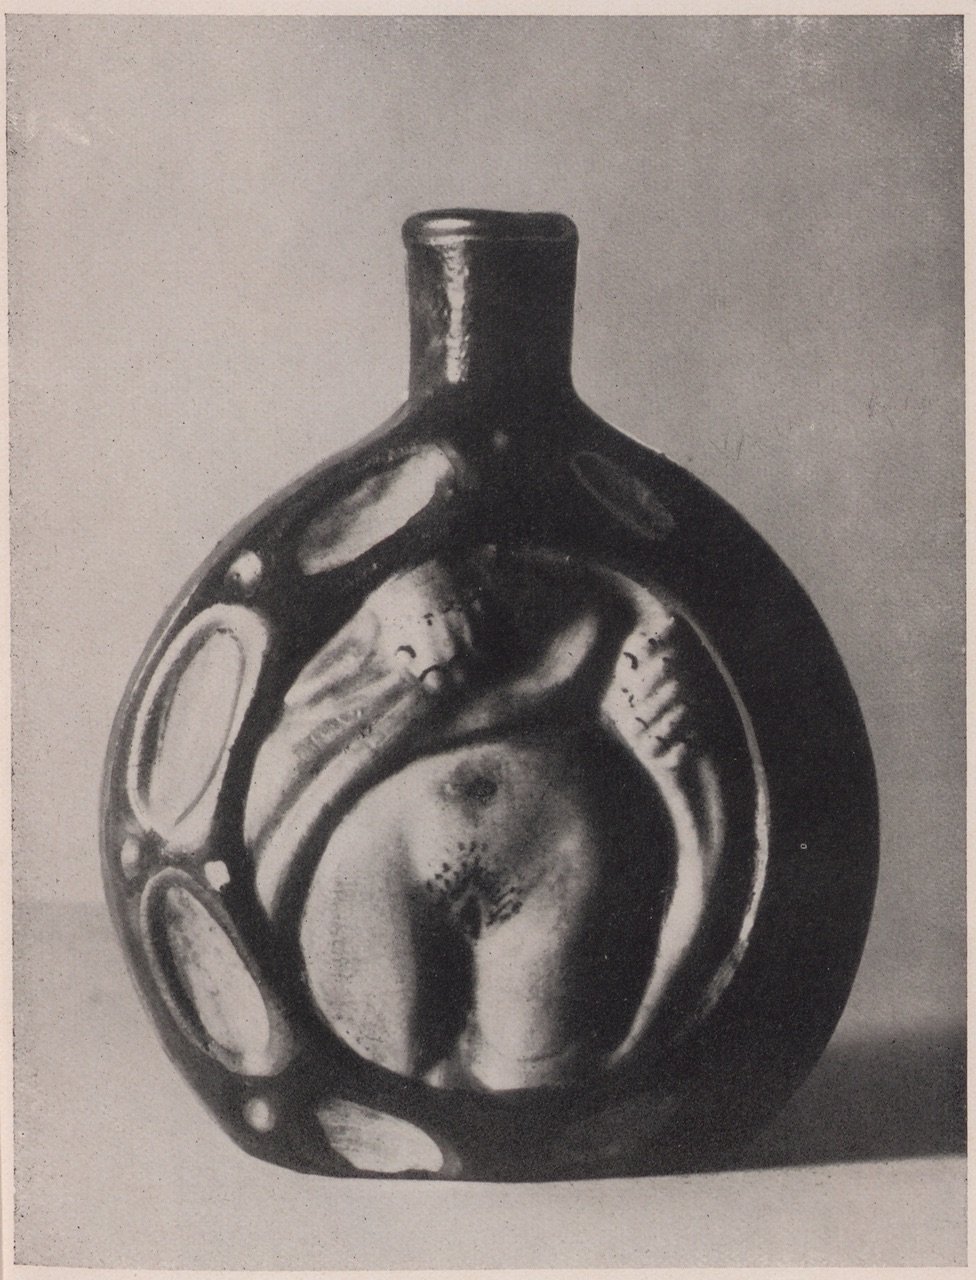 Fotografie einer Schnupftabakflasche, verziert mit entkleidetem weiblichem Unterleib (Magnus-Hirschfeld-Gesellschaft Public Domain Mark)